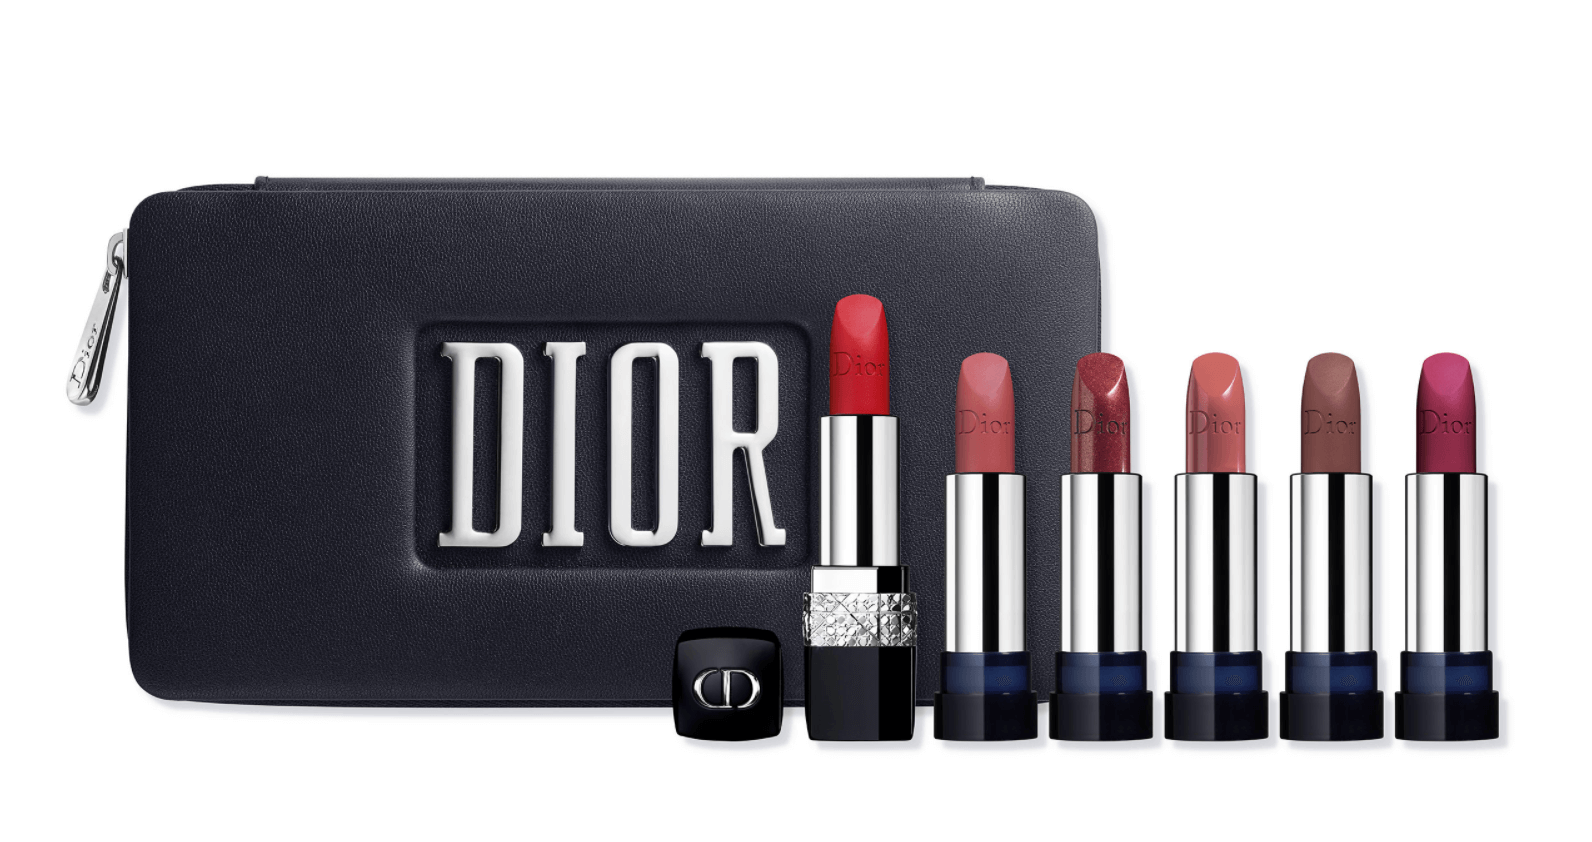 dior lipstick refill set